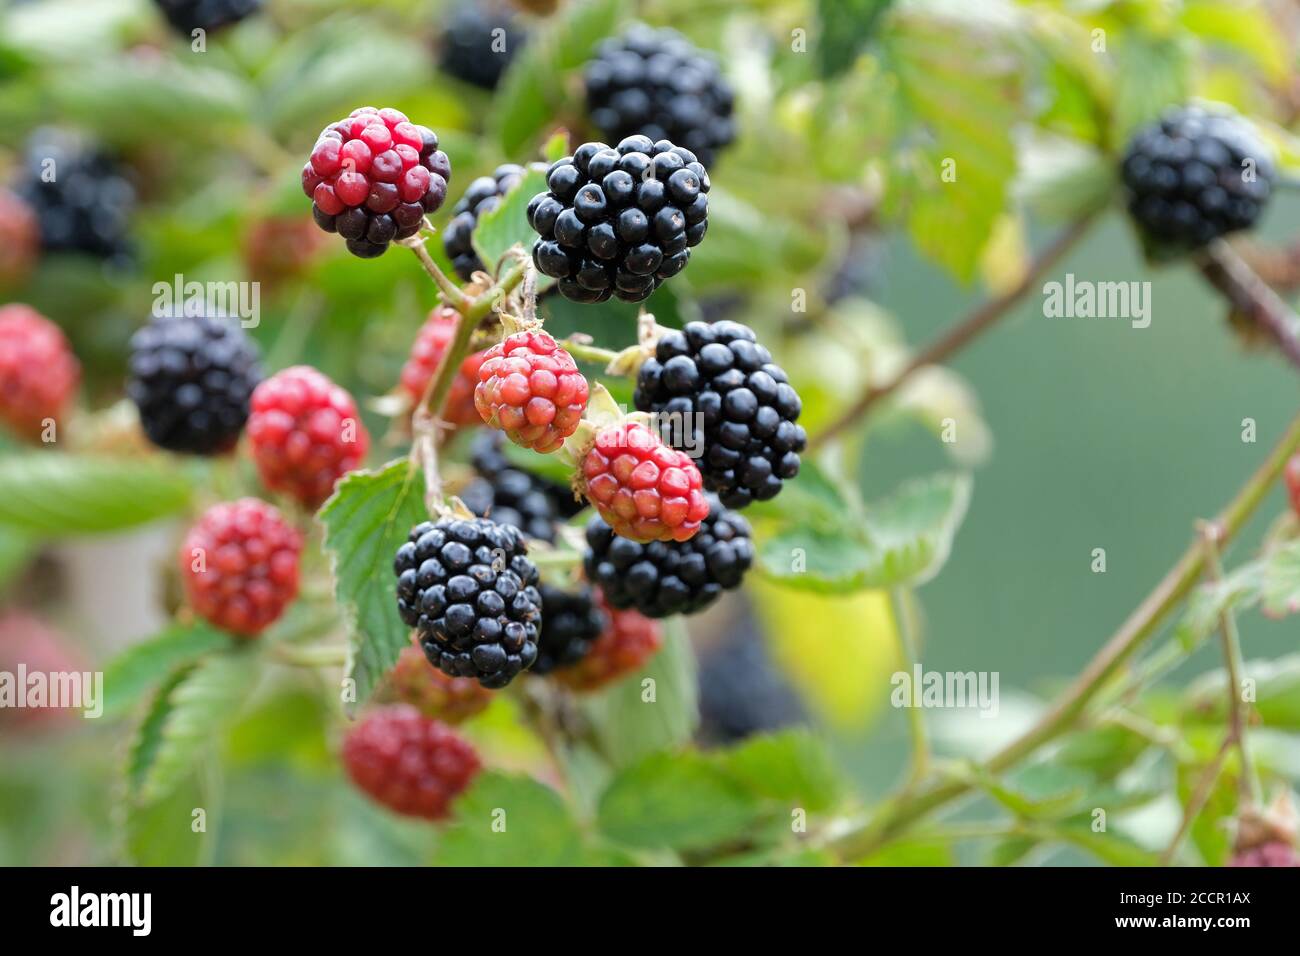 BlackBerry Navaho sans Thornless. Rubus fruticosus 'Navaho'. Fruits mûrs poussant sur une brousse Banque D'Images